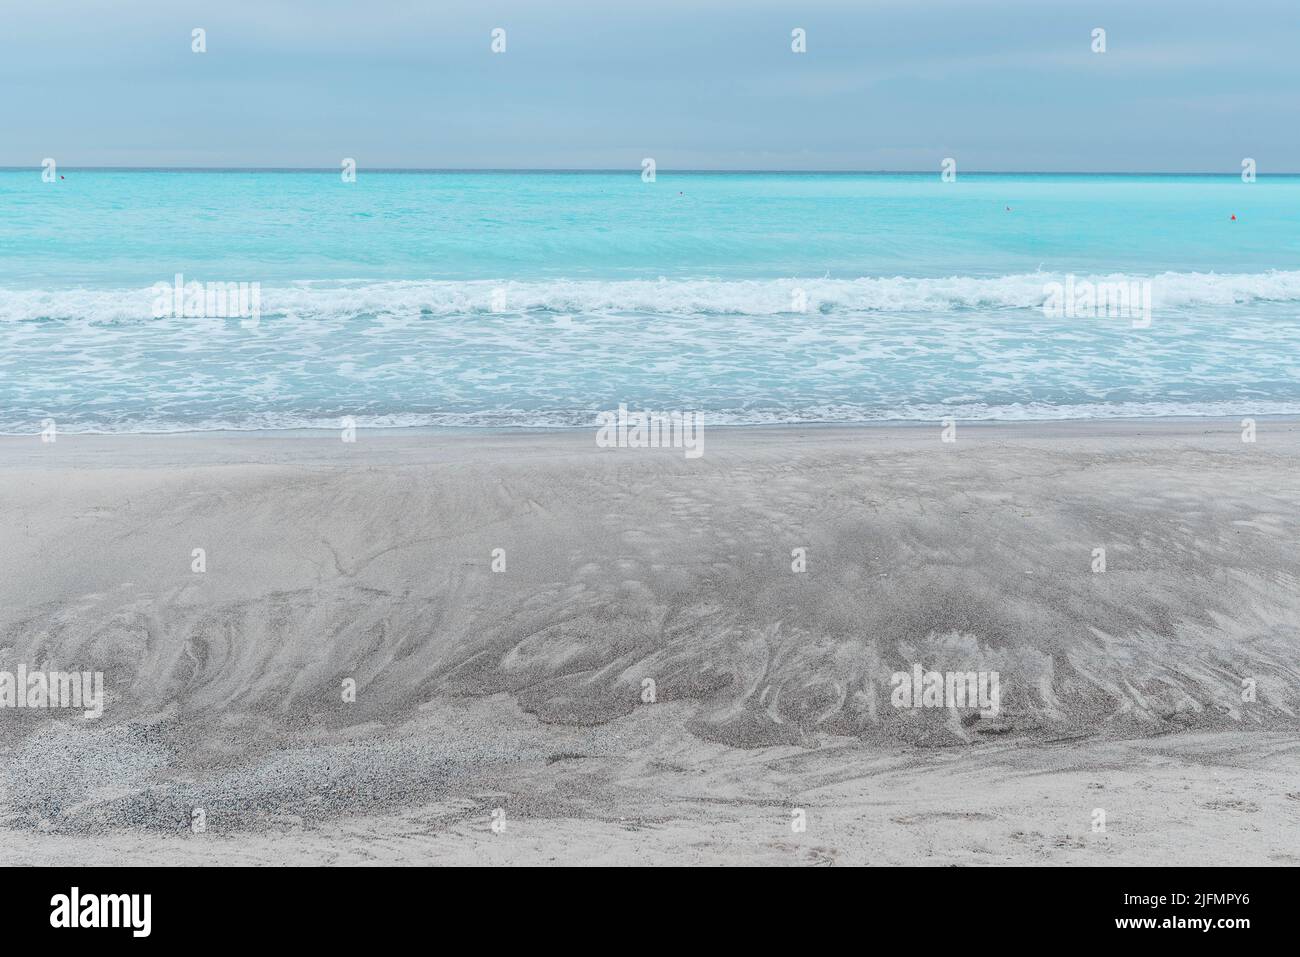 Wunderschöner Strand in Italien, weißer Sand, blaues Wasser, während sich ein Gewitter nähert Stockfoto